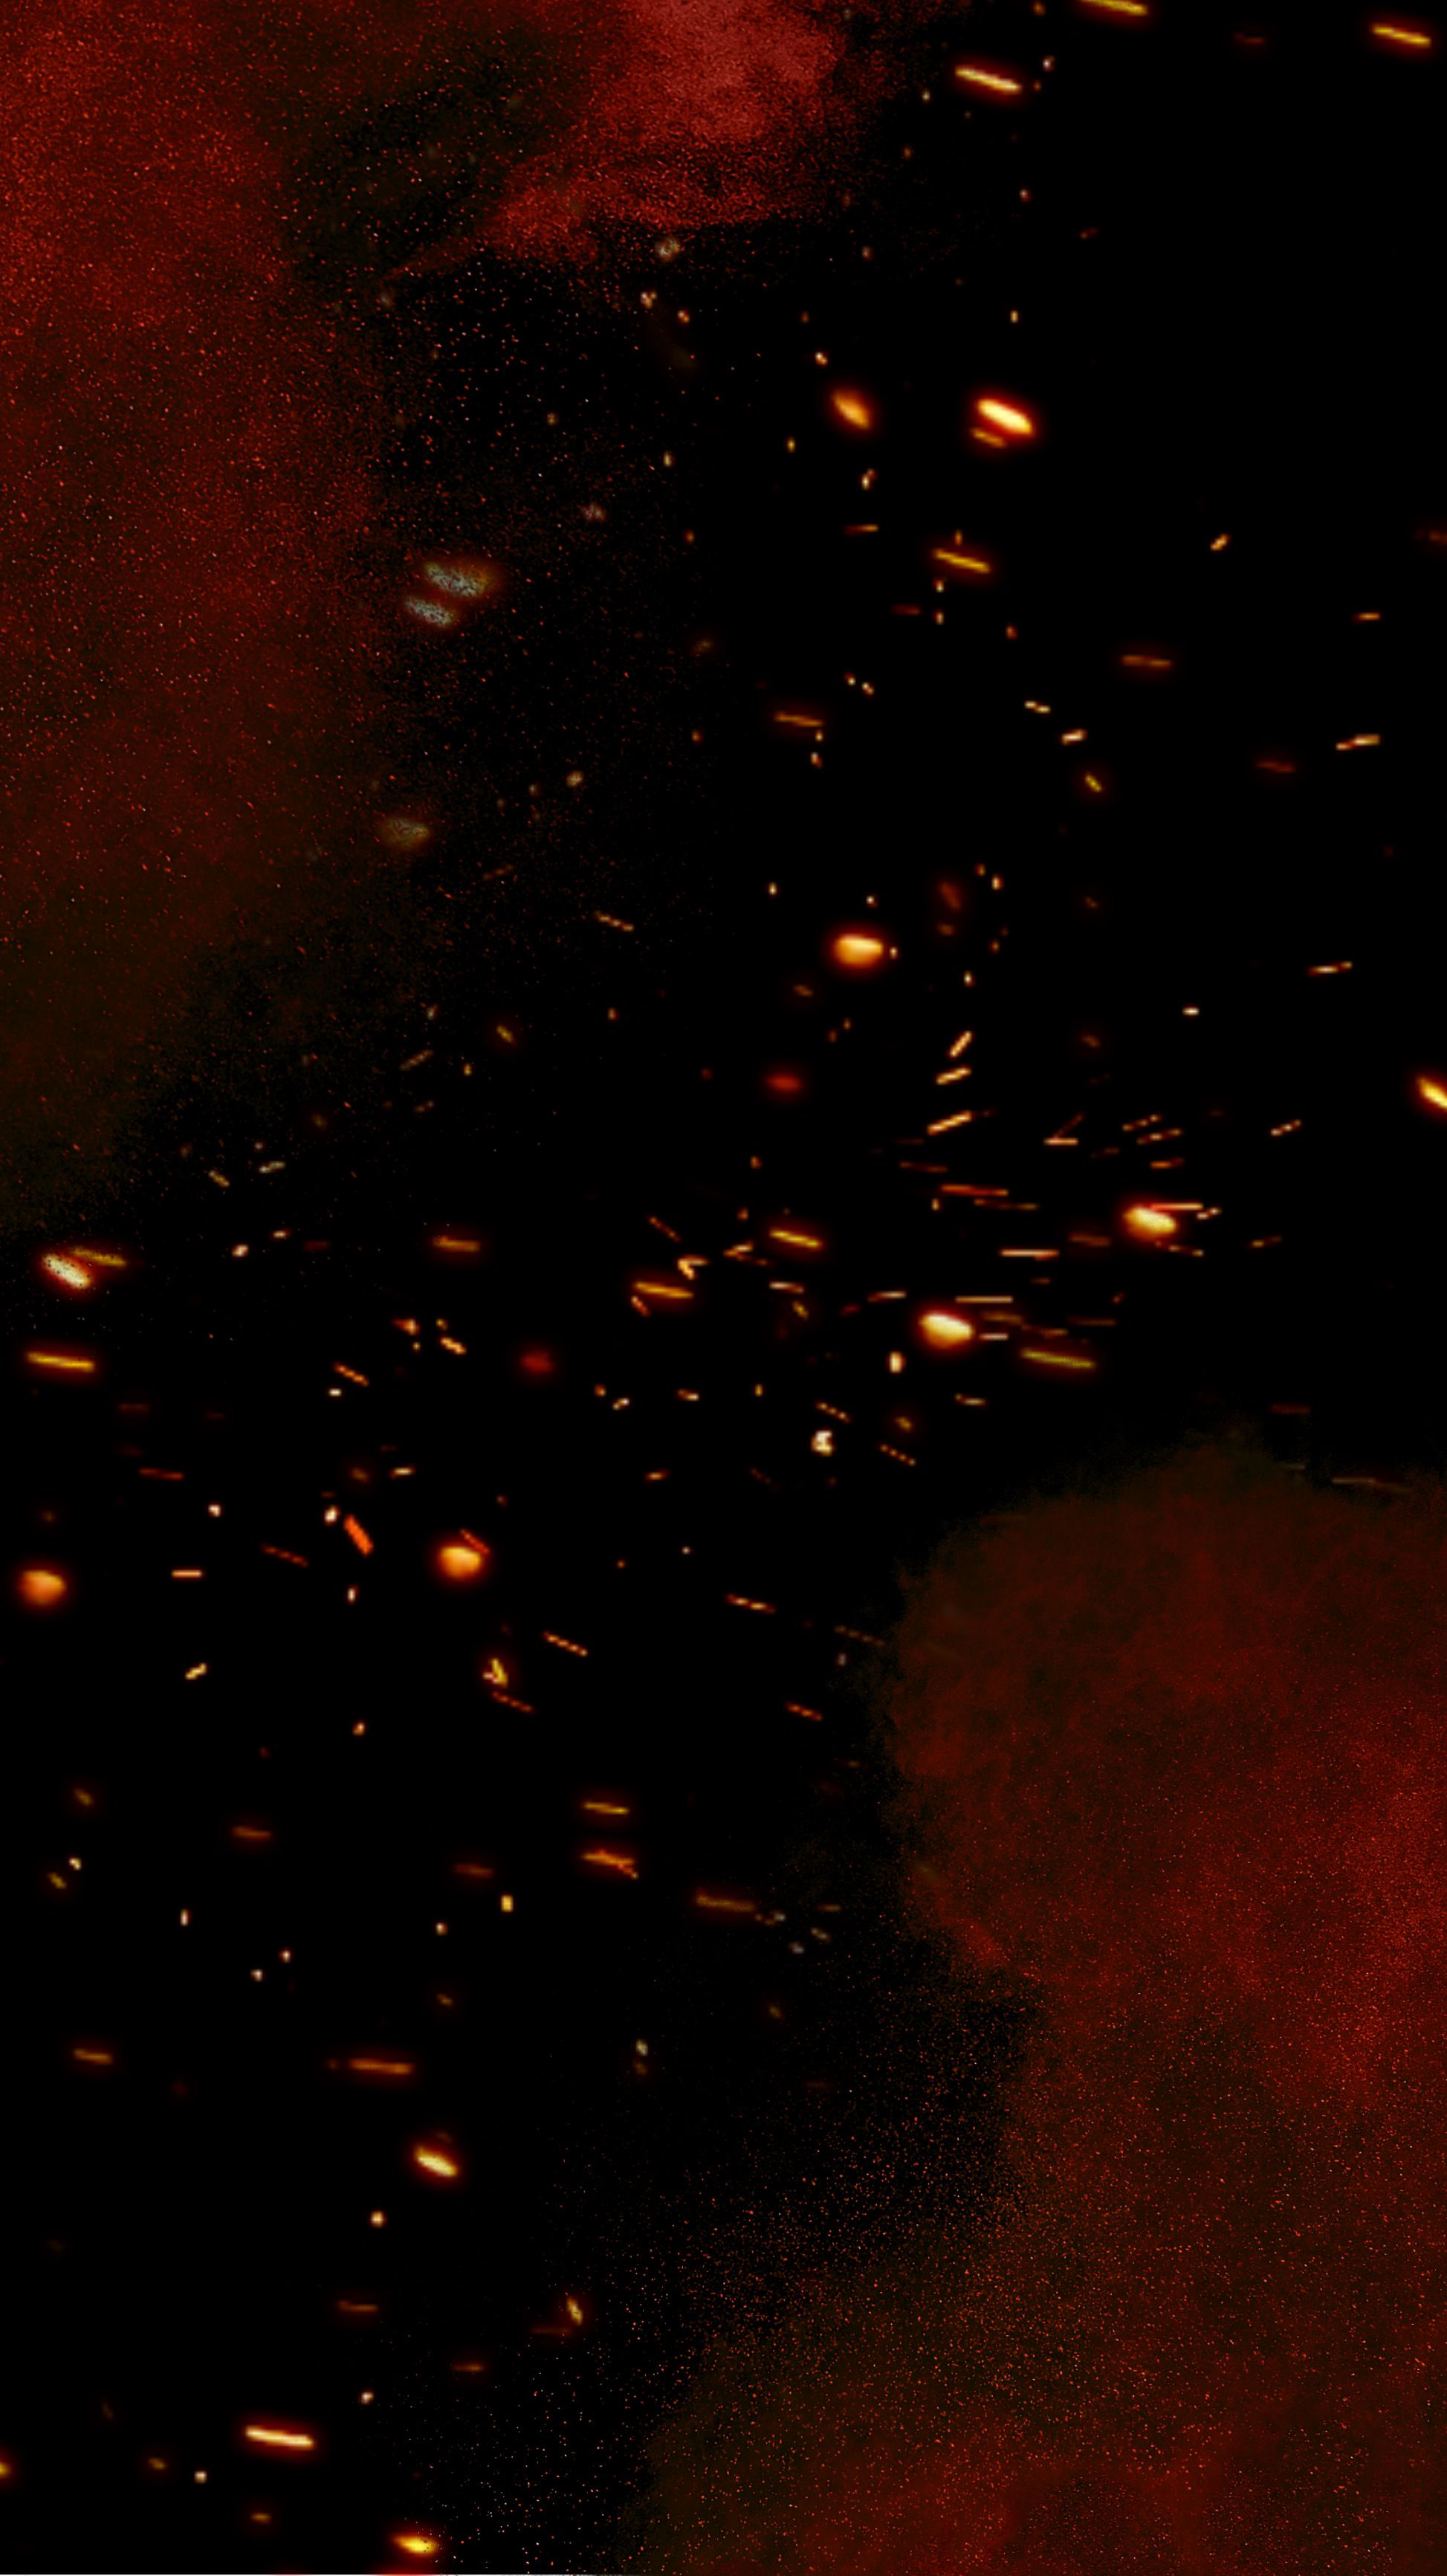 Hình nền đỏ chữa cháy (Red glitter fire flake wallpaper): Hãy dành một ít thời gian để ngắm nhìn hình nền đỏ chữa cháy này. Bạn sẽ bị cuốn hút vào những chiếc lá vàng rực rỡ với ánh tuyệt đẹp của lửa và vàng óng ả. Những chi tiết nhỏ nhưng đầy sức hút này sẽ giúp cho màn hình của bạn càng thêm sống động và ấn tượng.